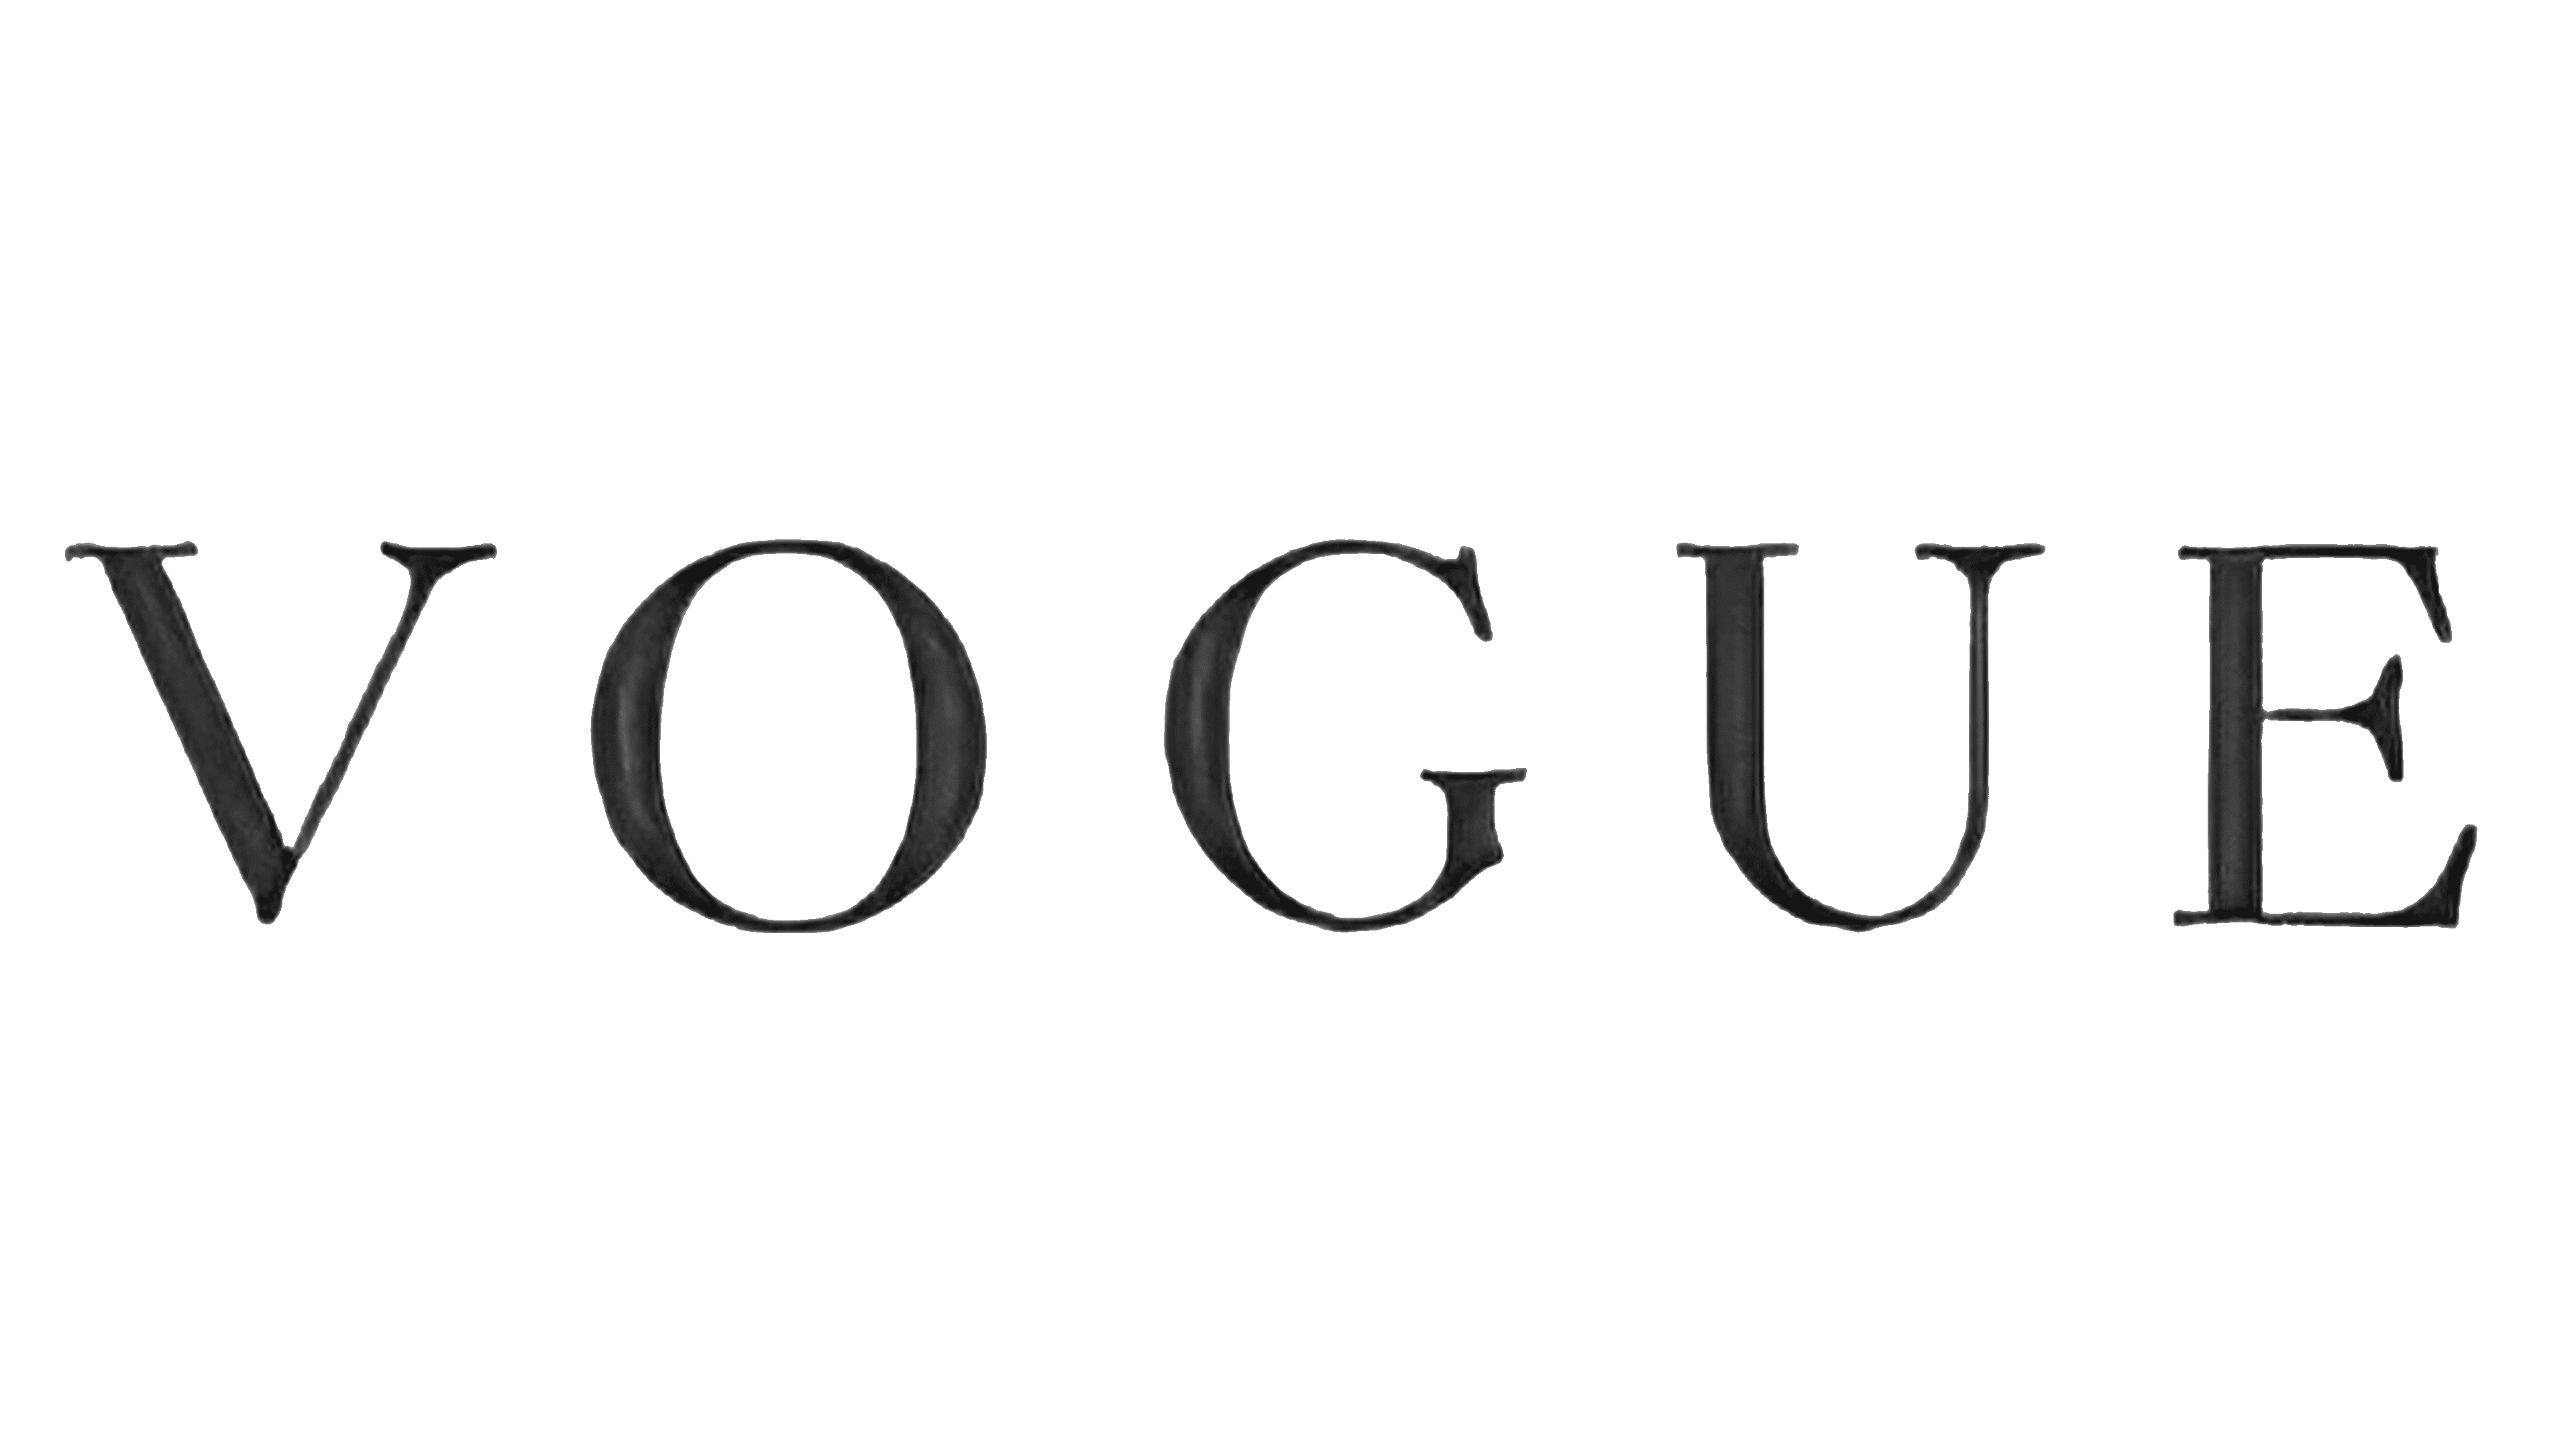 Download Vogue Logo In SVG Vector Or PNG File Format | vlr.eng.br